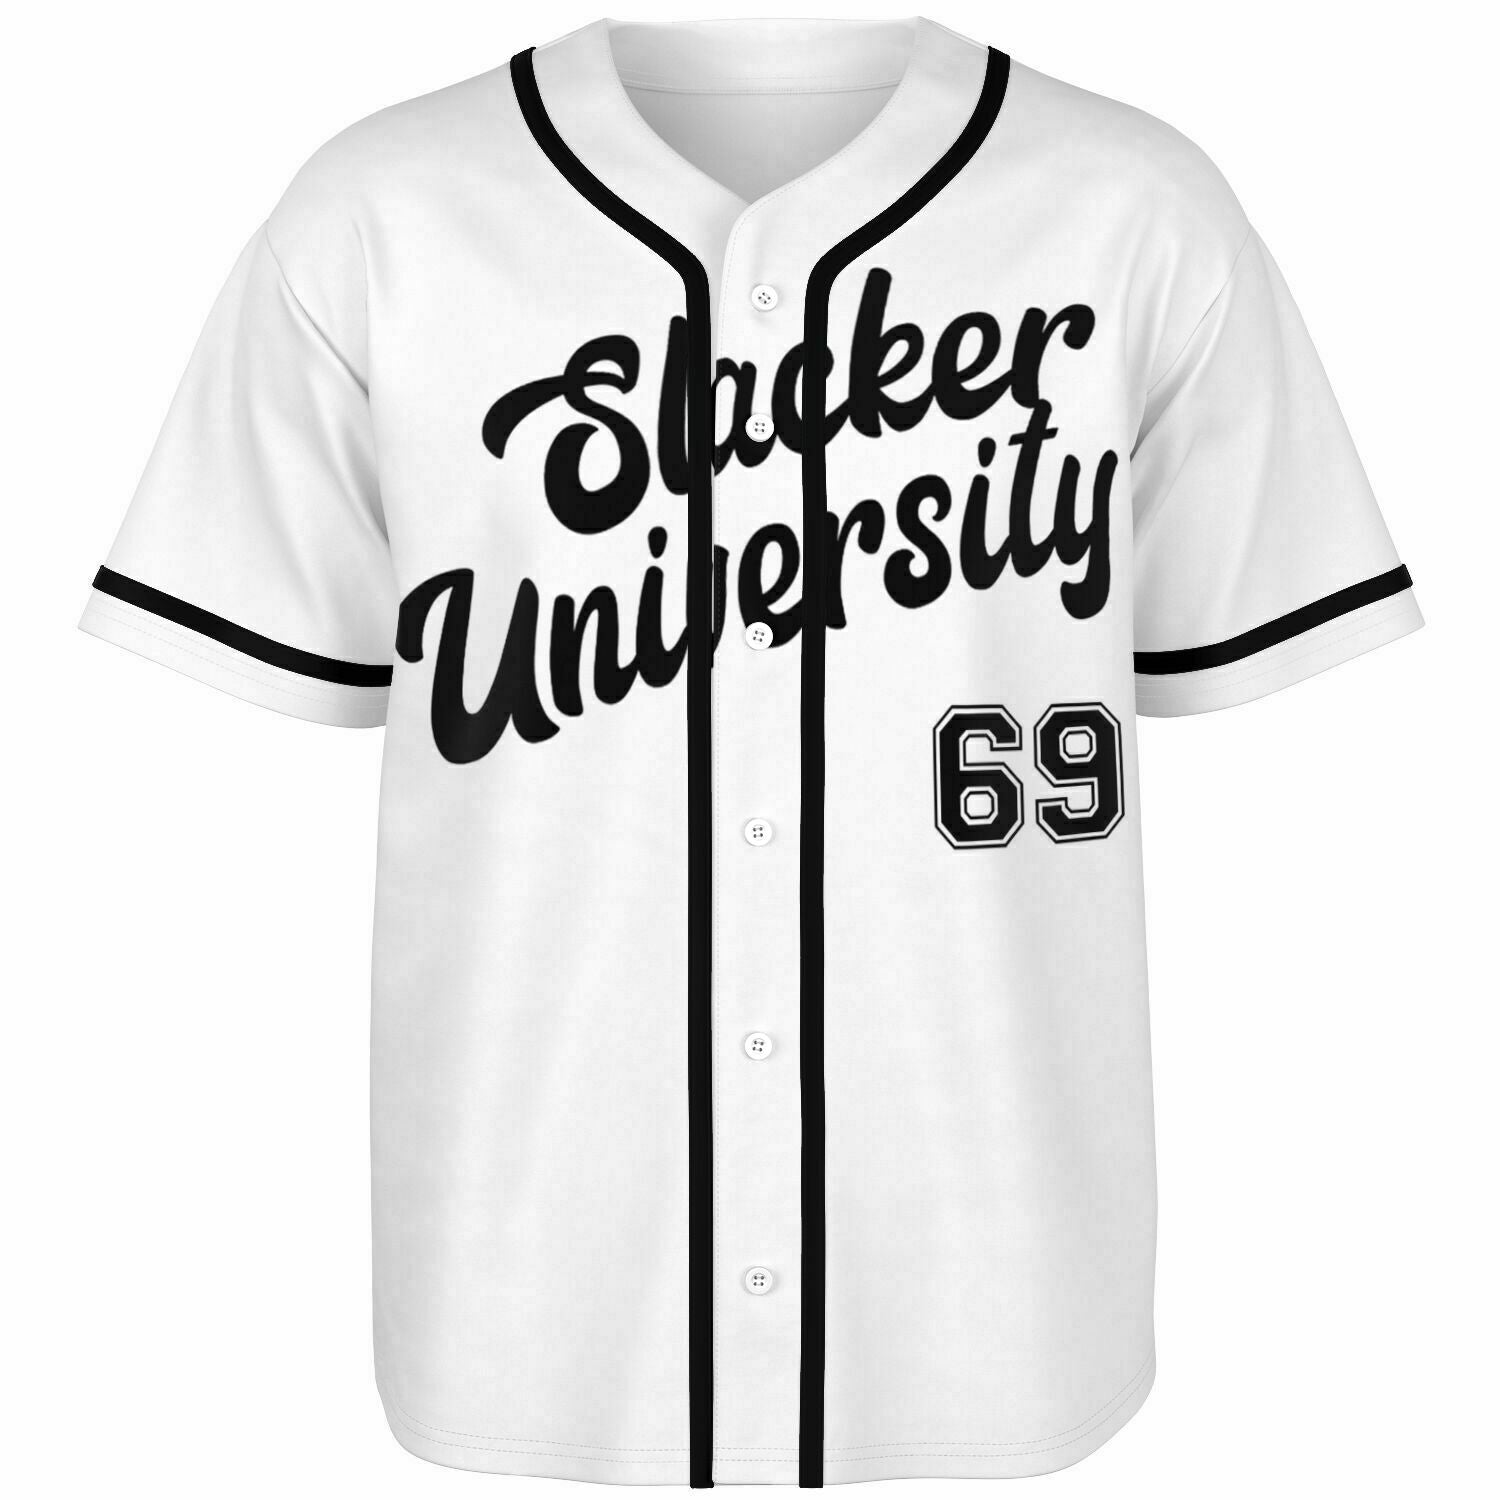 Slacker University Baseball Jersey White XS